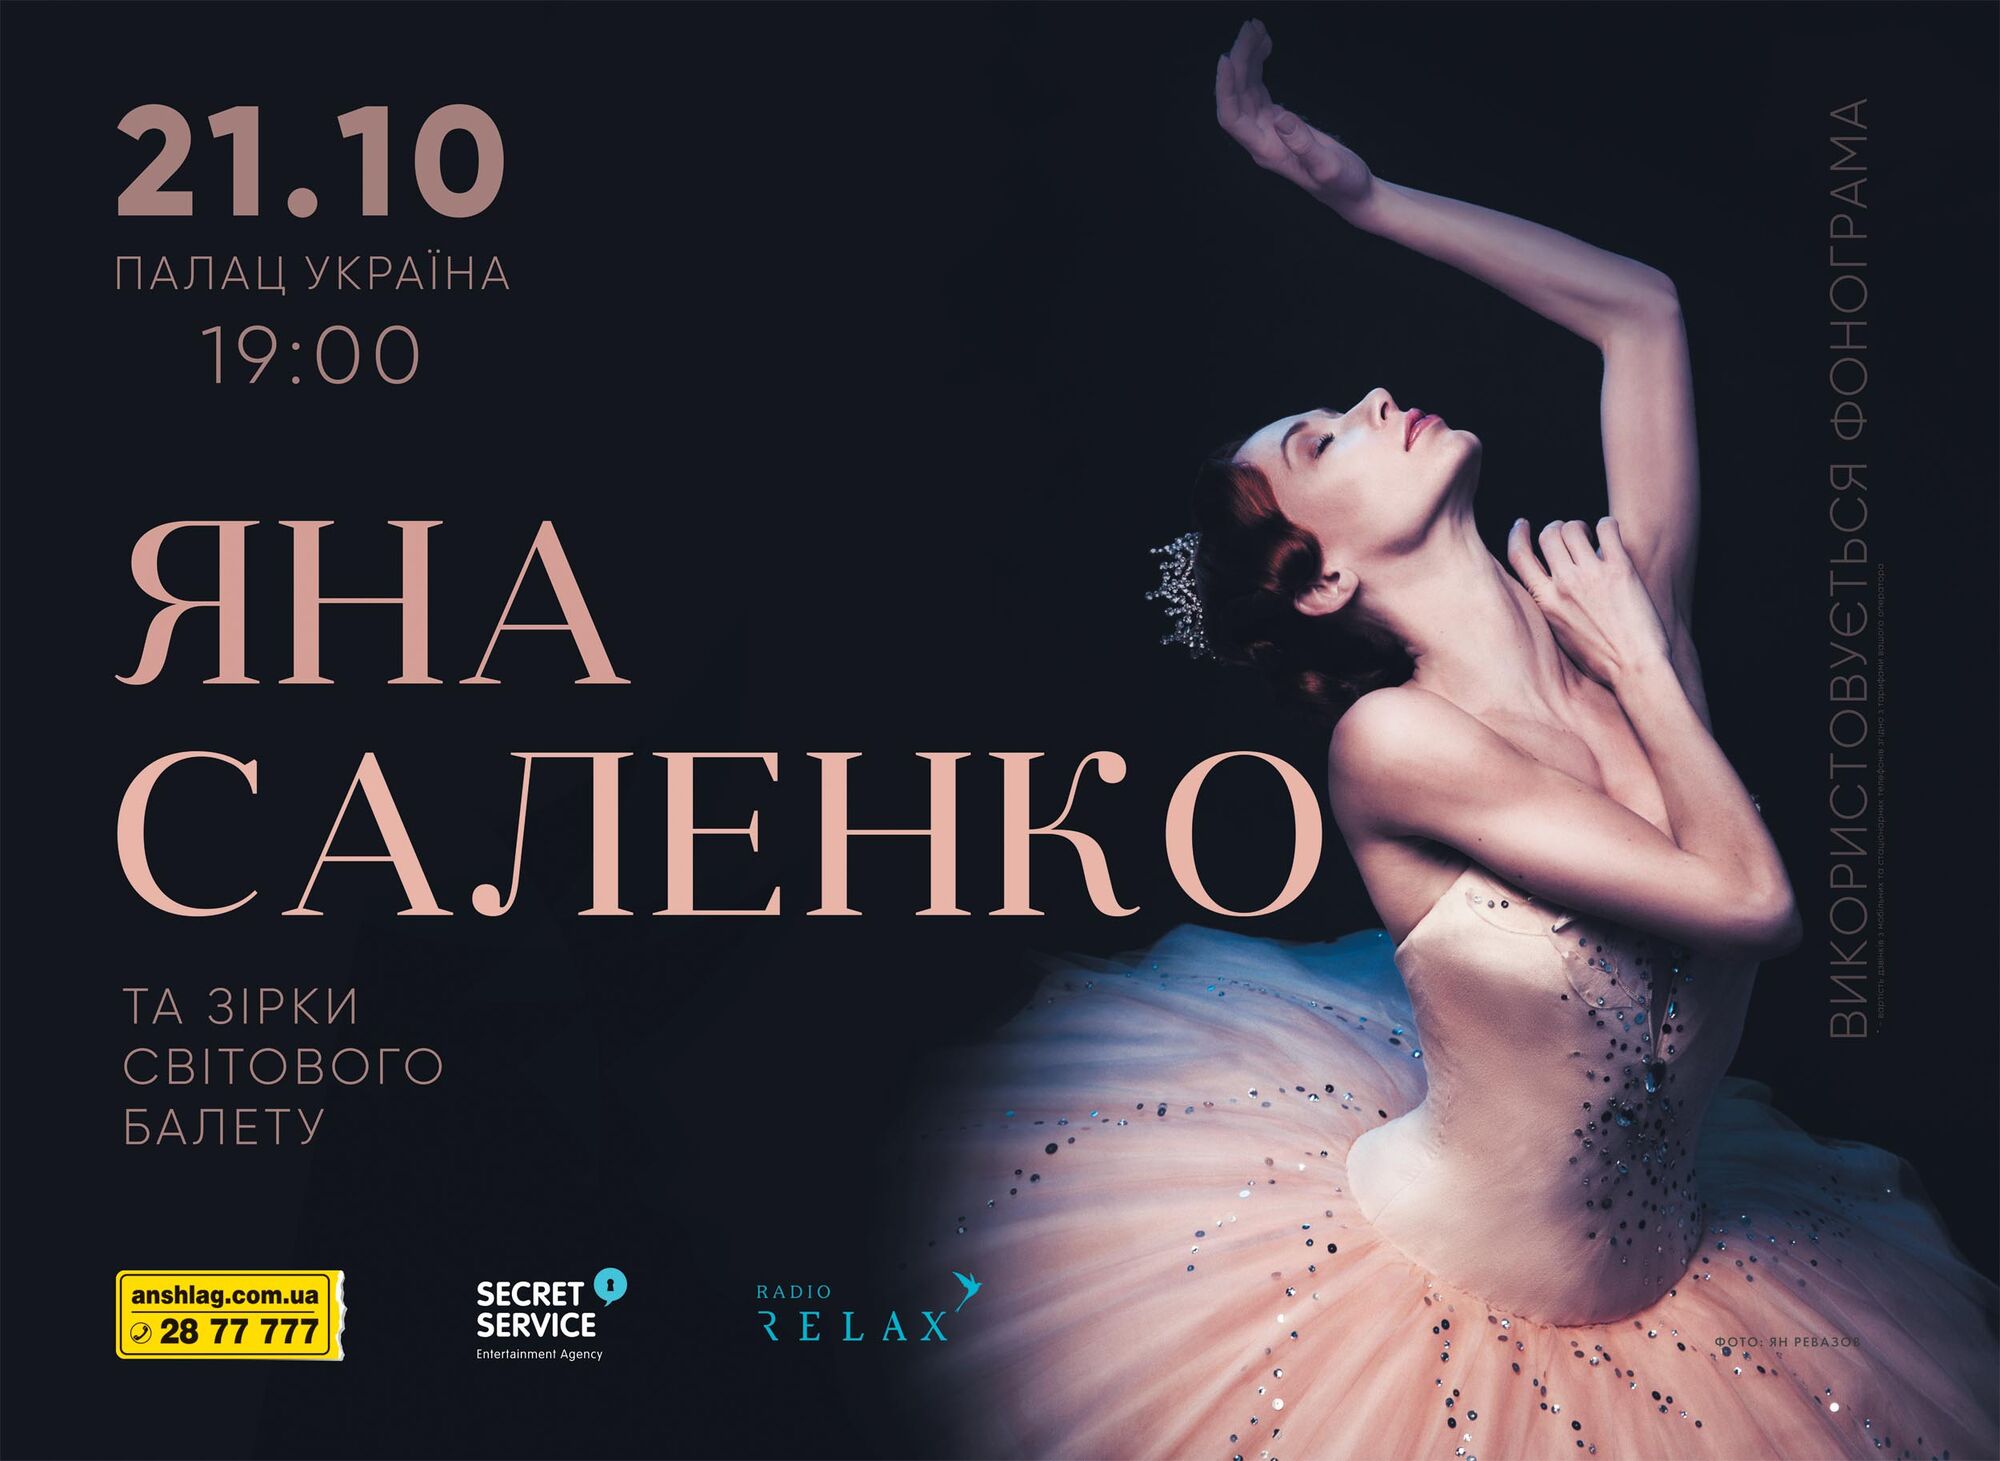 Прима-балерина Яна Саленко збере світових зірок балету на київській сцені